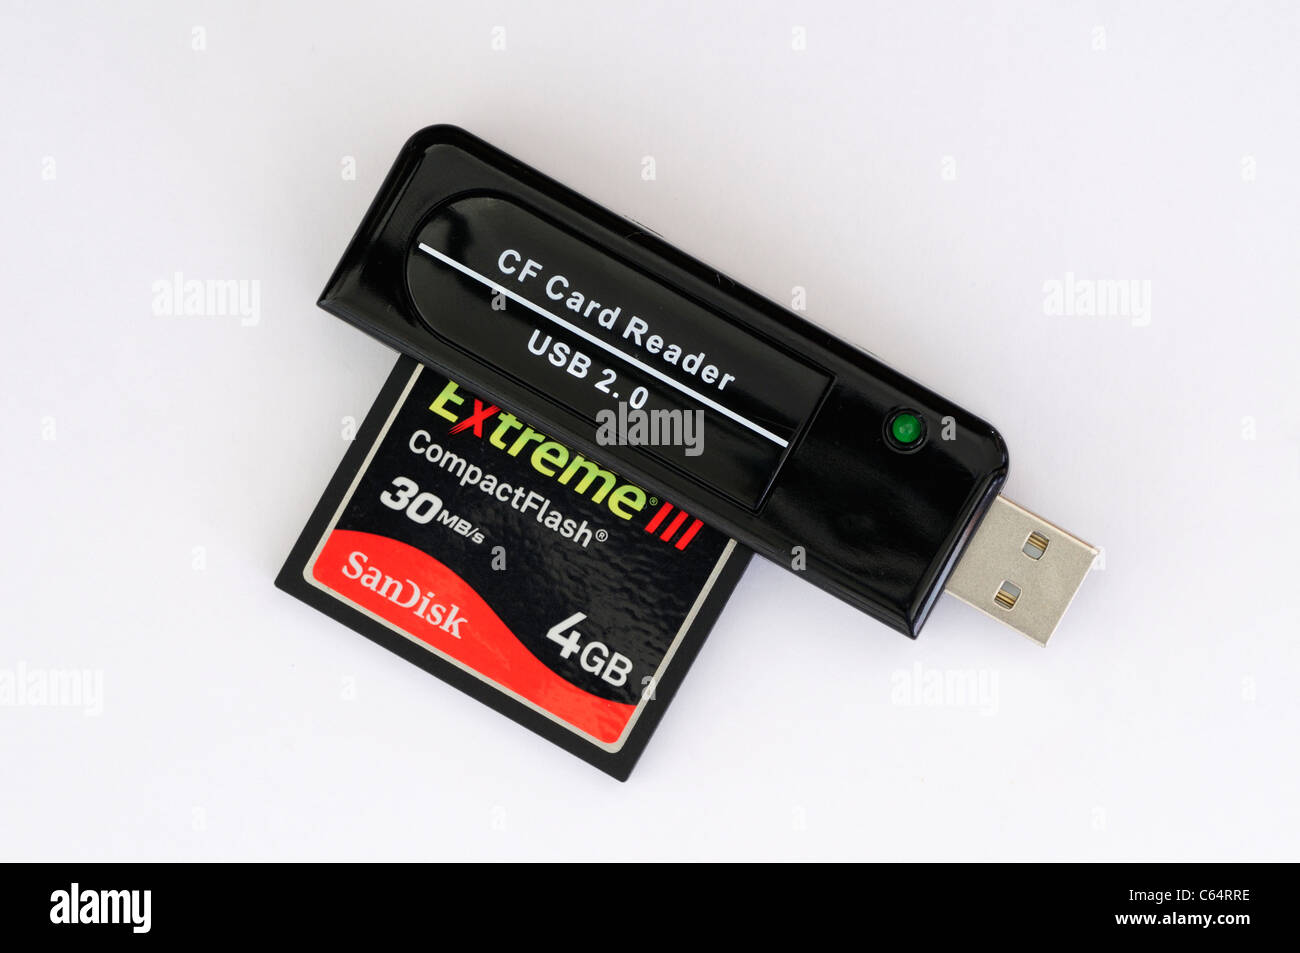 CF Compact Flash-Speicherkarten-Lesegerät mit Sandisk Extreme III 4GB Speicherkarte Stockfoto